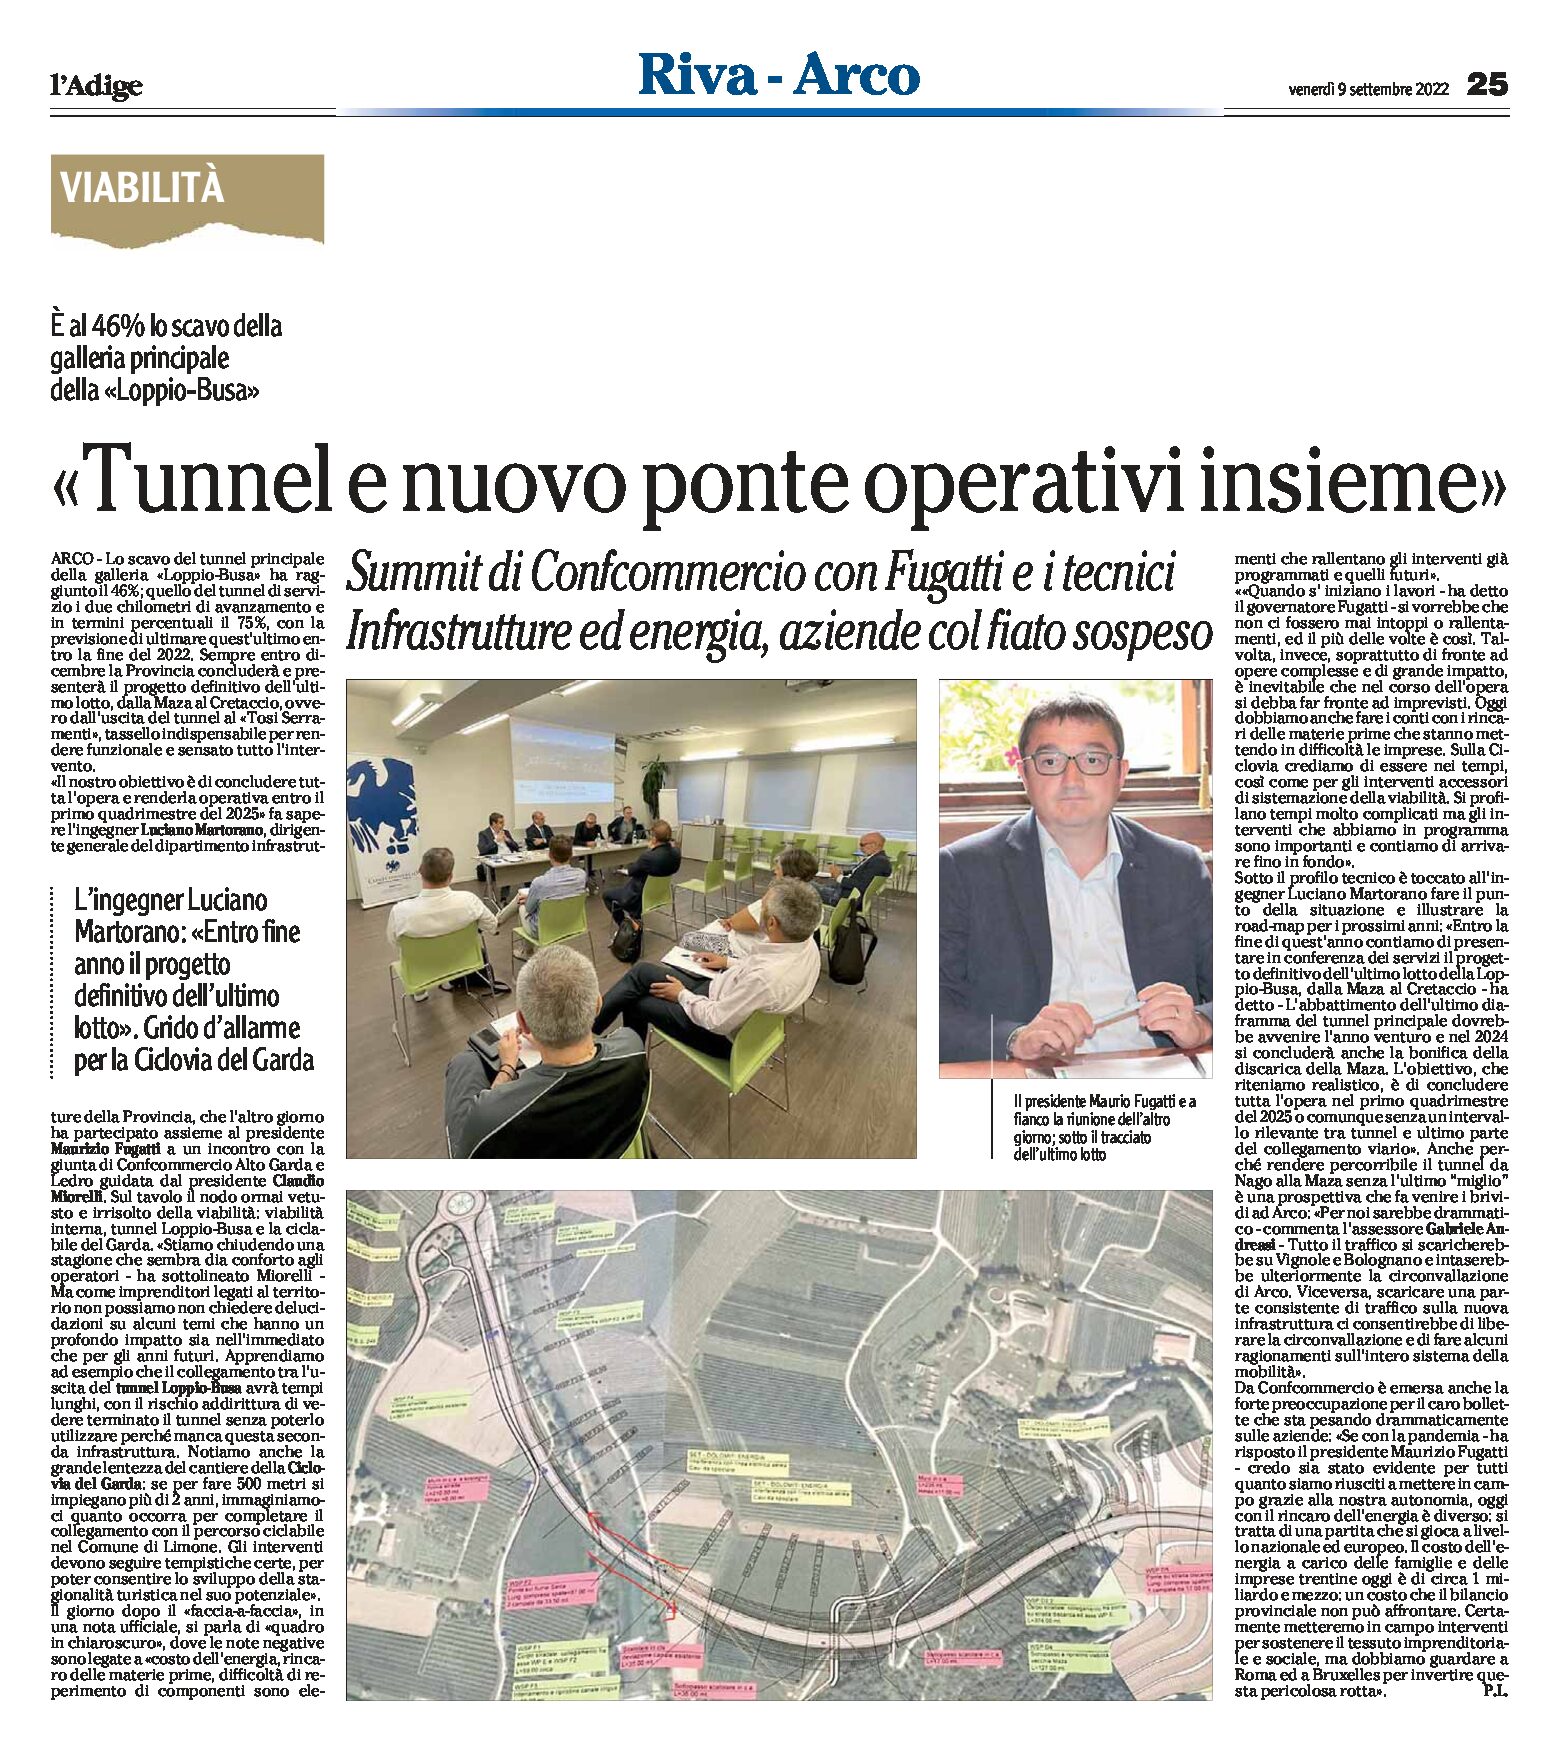 Arco, galleria Loppio-Busa: tunnel e nuovo ponte operativi insieme